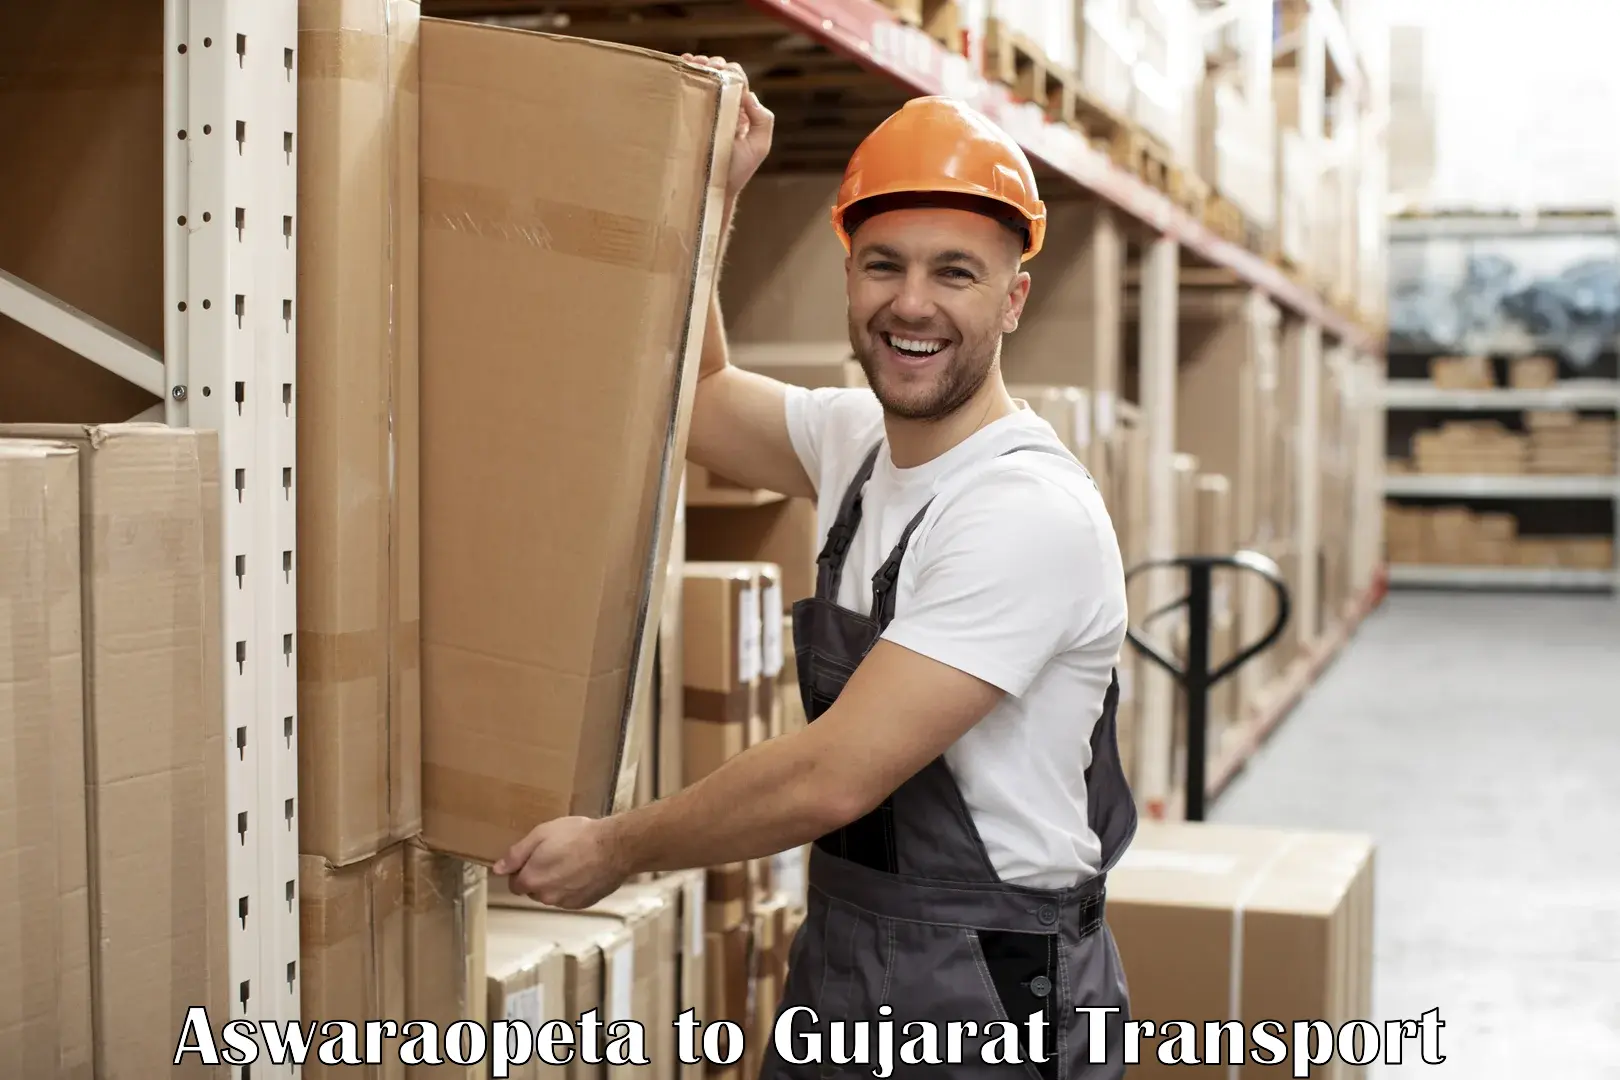 Commercial transport service Aswaraopeta to Jhagadia